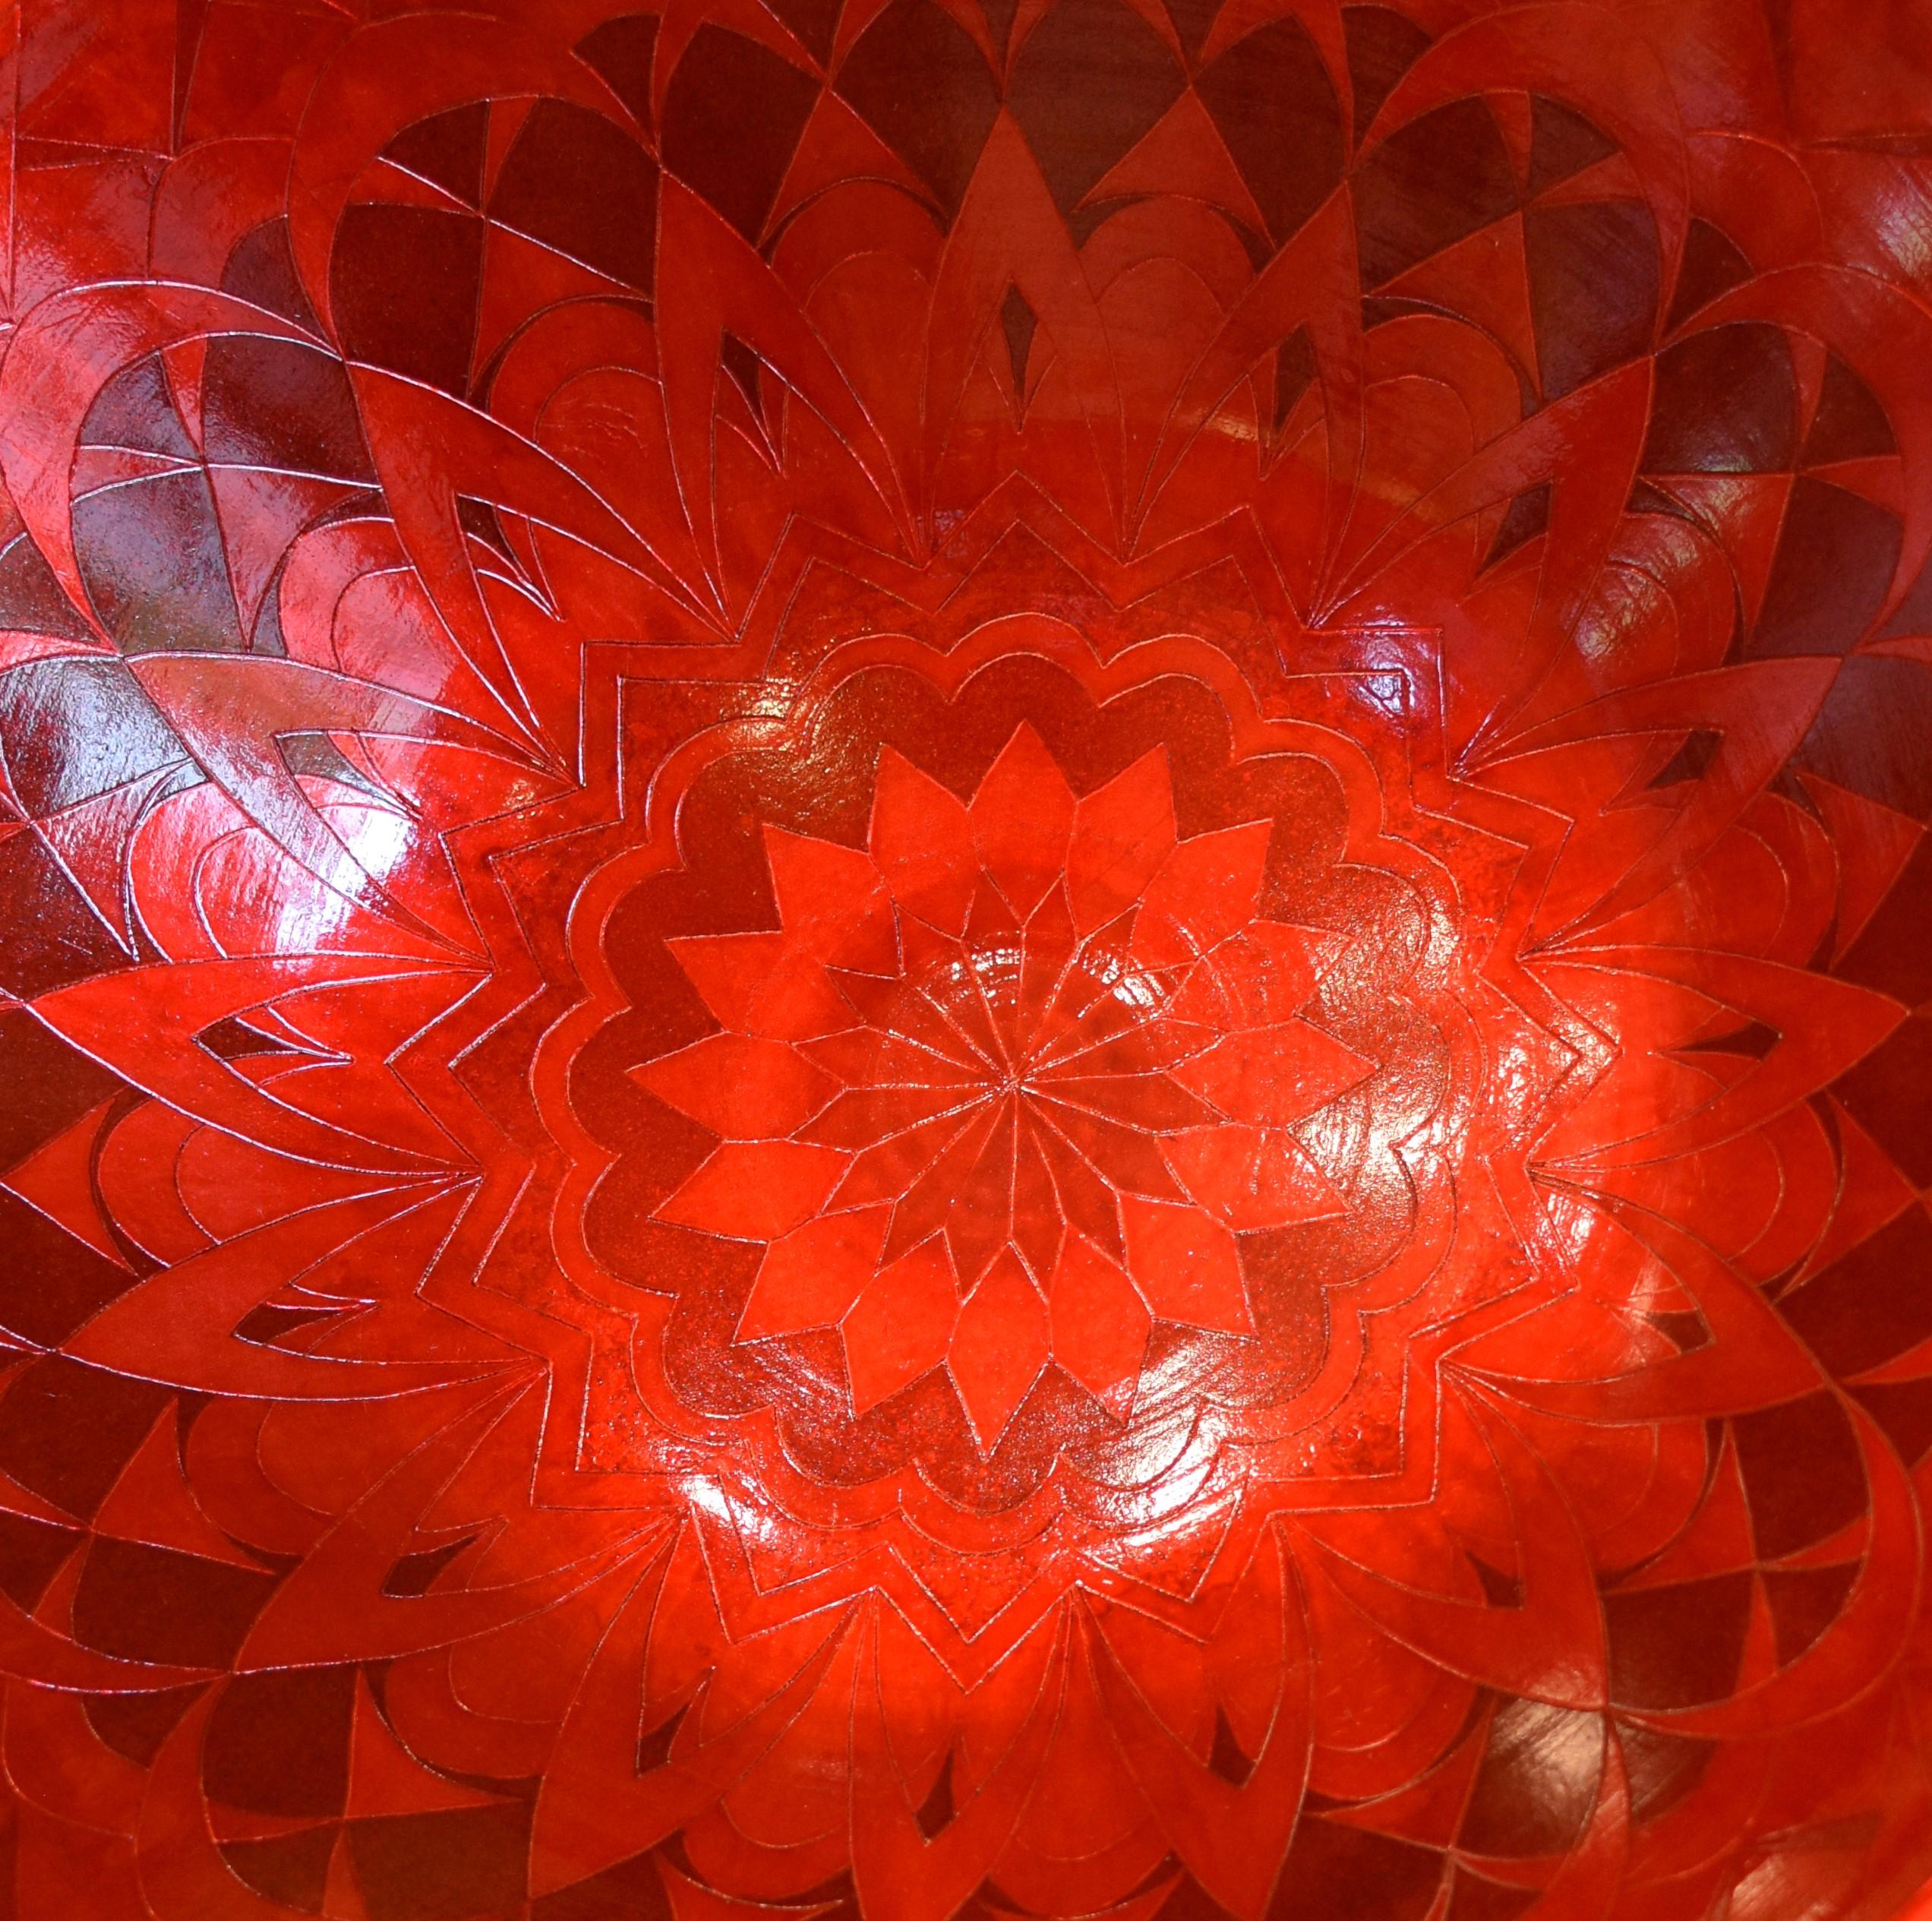 Exquis bol/centre de table japonais contemporain de très grande taille en porcelaine à base de feuille d'argent en trois nuances de rouge sur un corps de forme étonnante. Il s'agit d'un chef-d'œuvre réalisé par un maître de troisième génération d'un